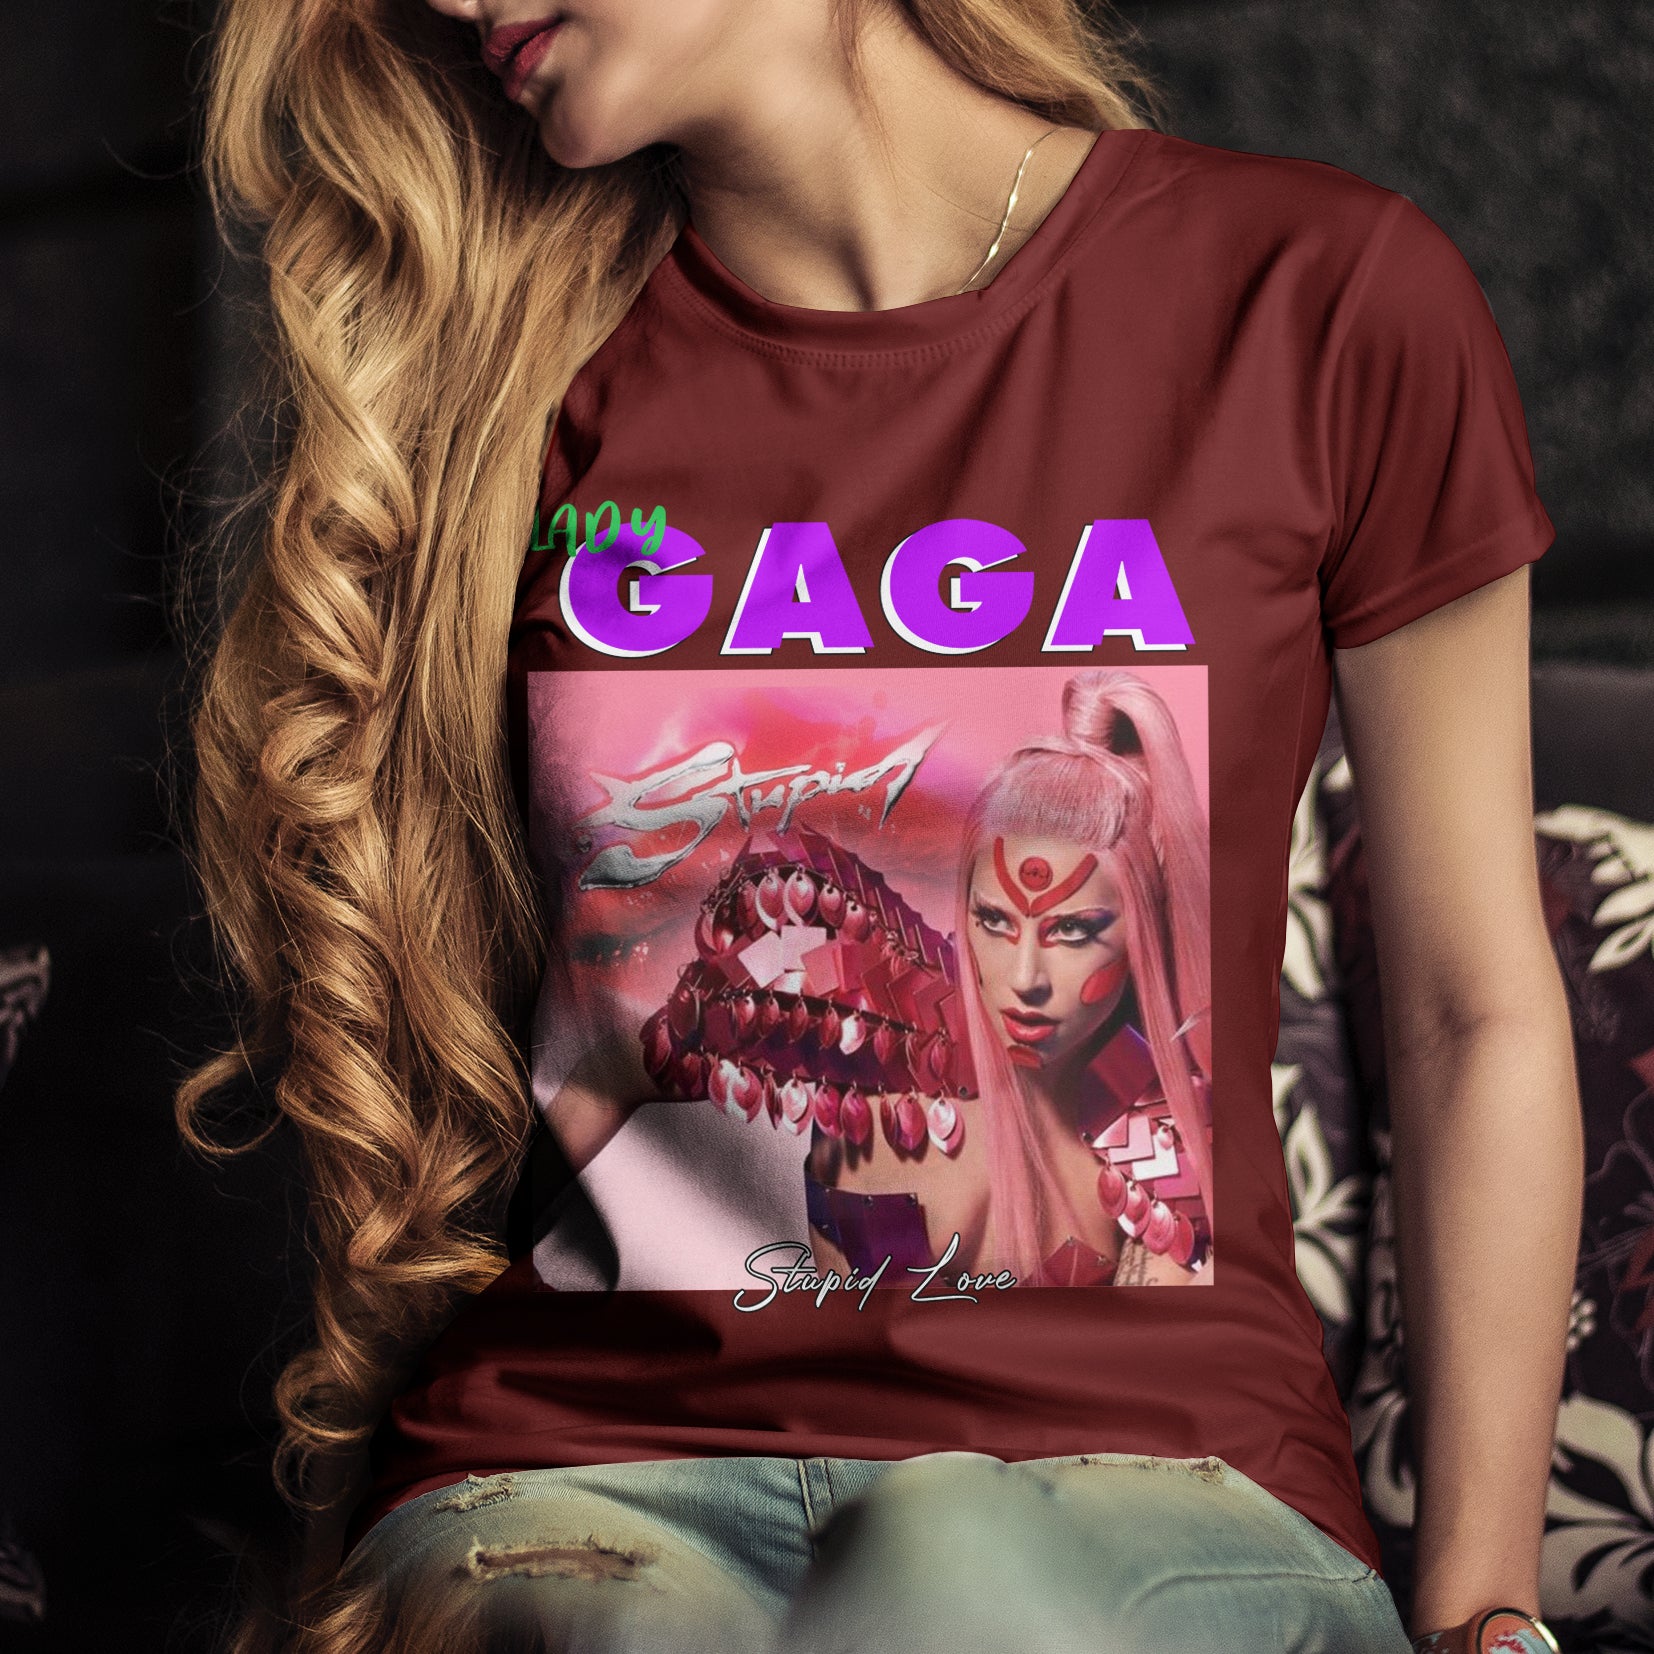 lady gaga shirt music lady gaga retro vintage t shirt stupid love bootleg 2625